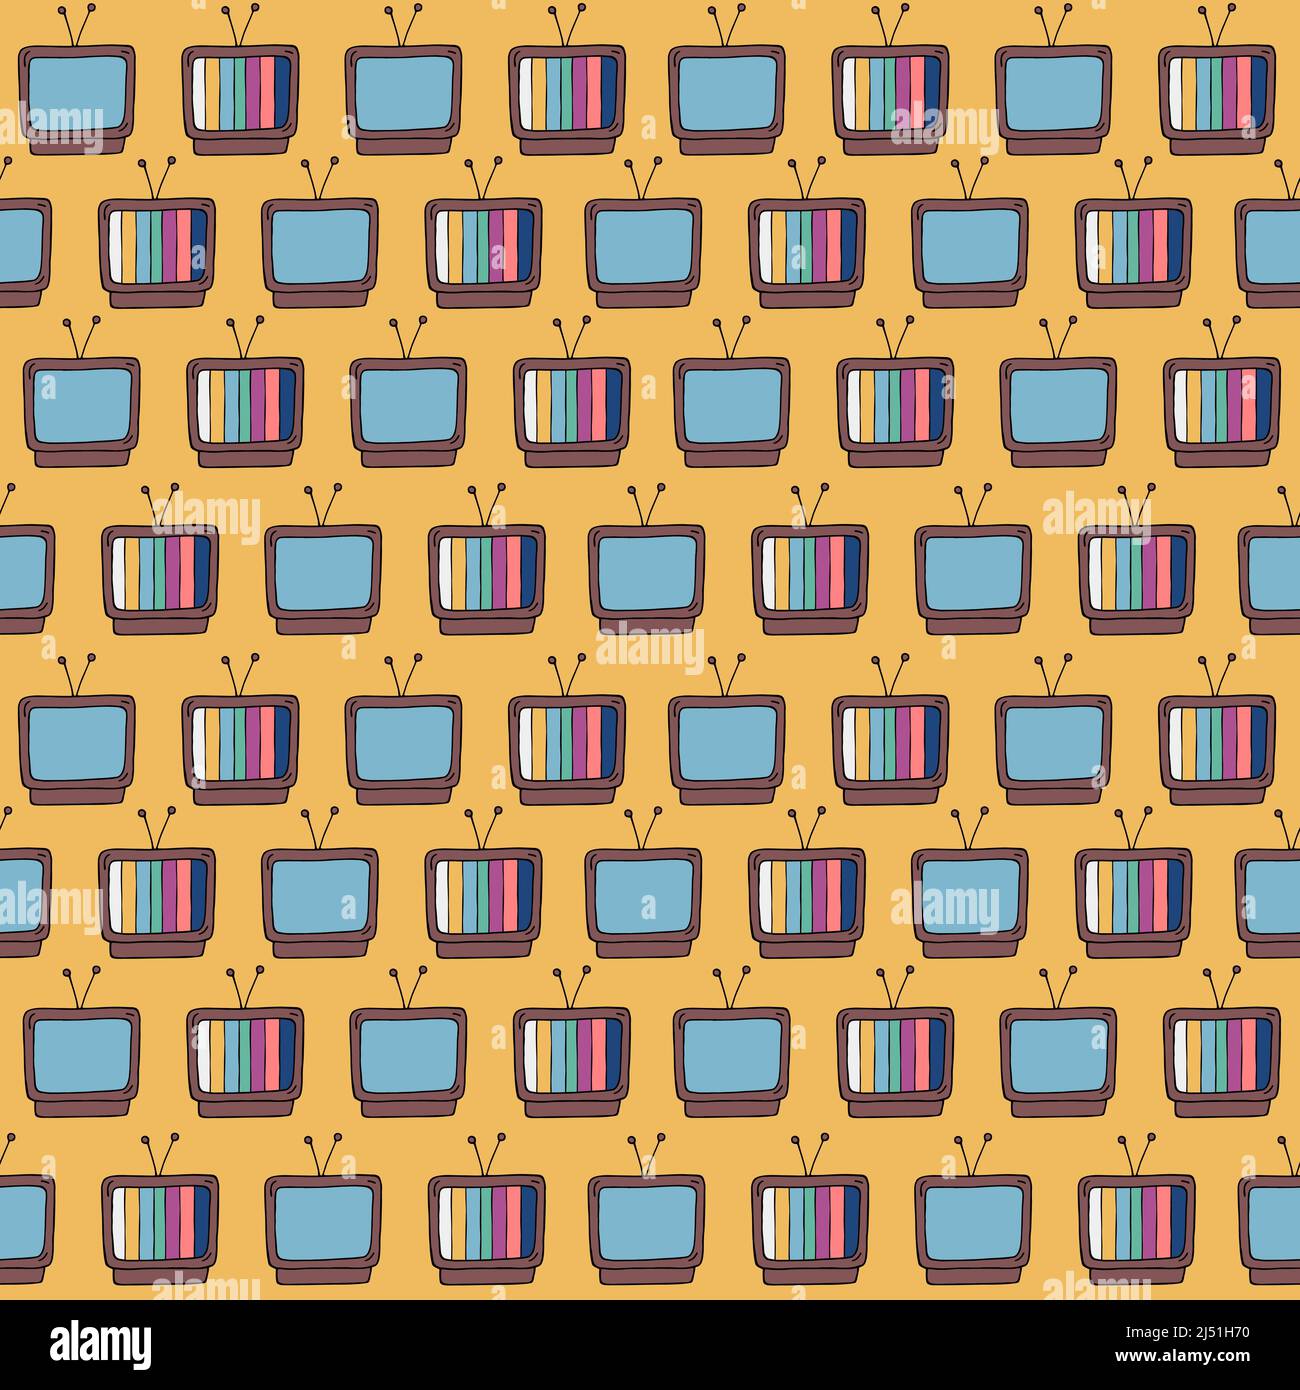 Retro-TV-Muster. 90s oder 80s Stil kritzelt nahtlosen Hintergrund. Farbenfroher alter Fernseher. Doodle-Illustration für Vintage-Designs. Stock Vektor